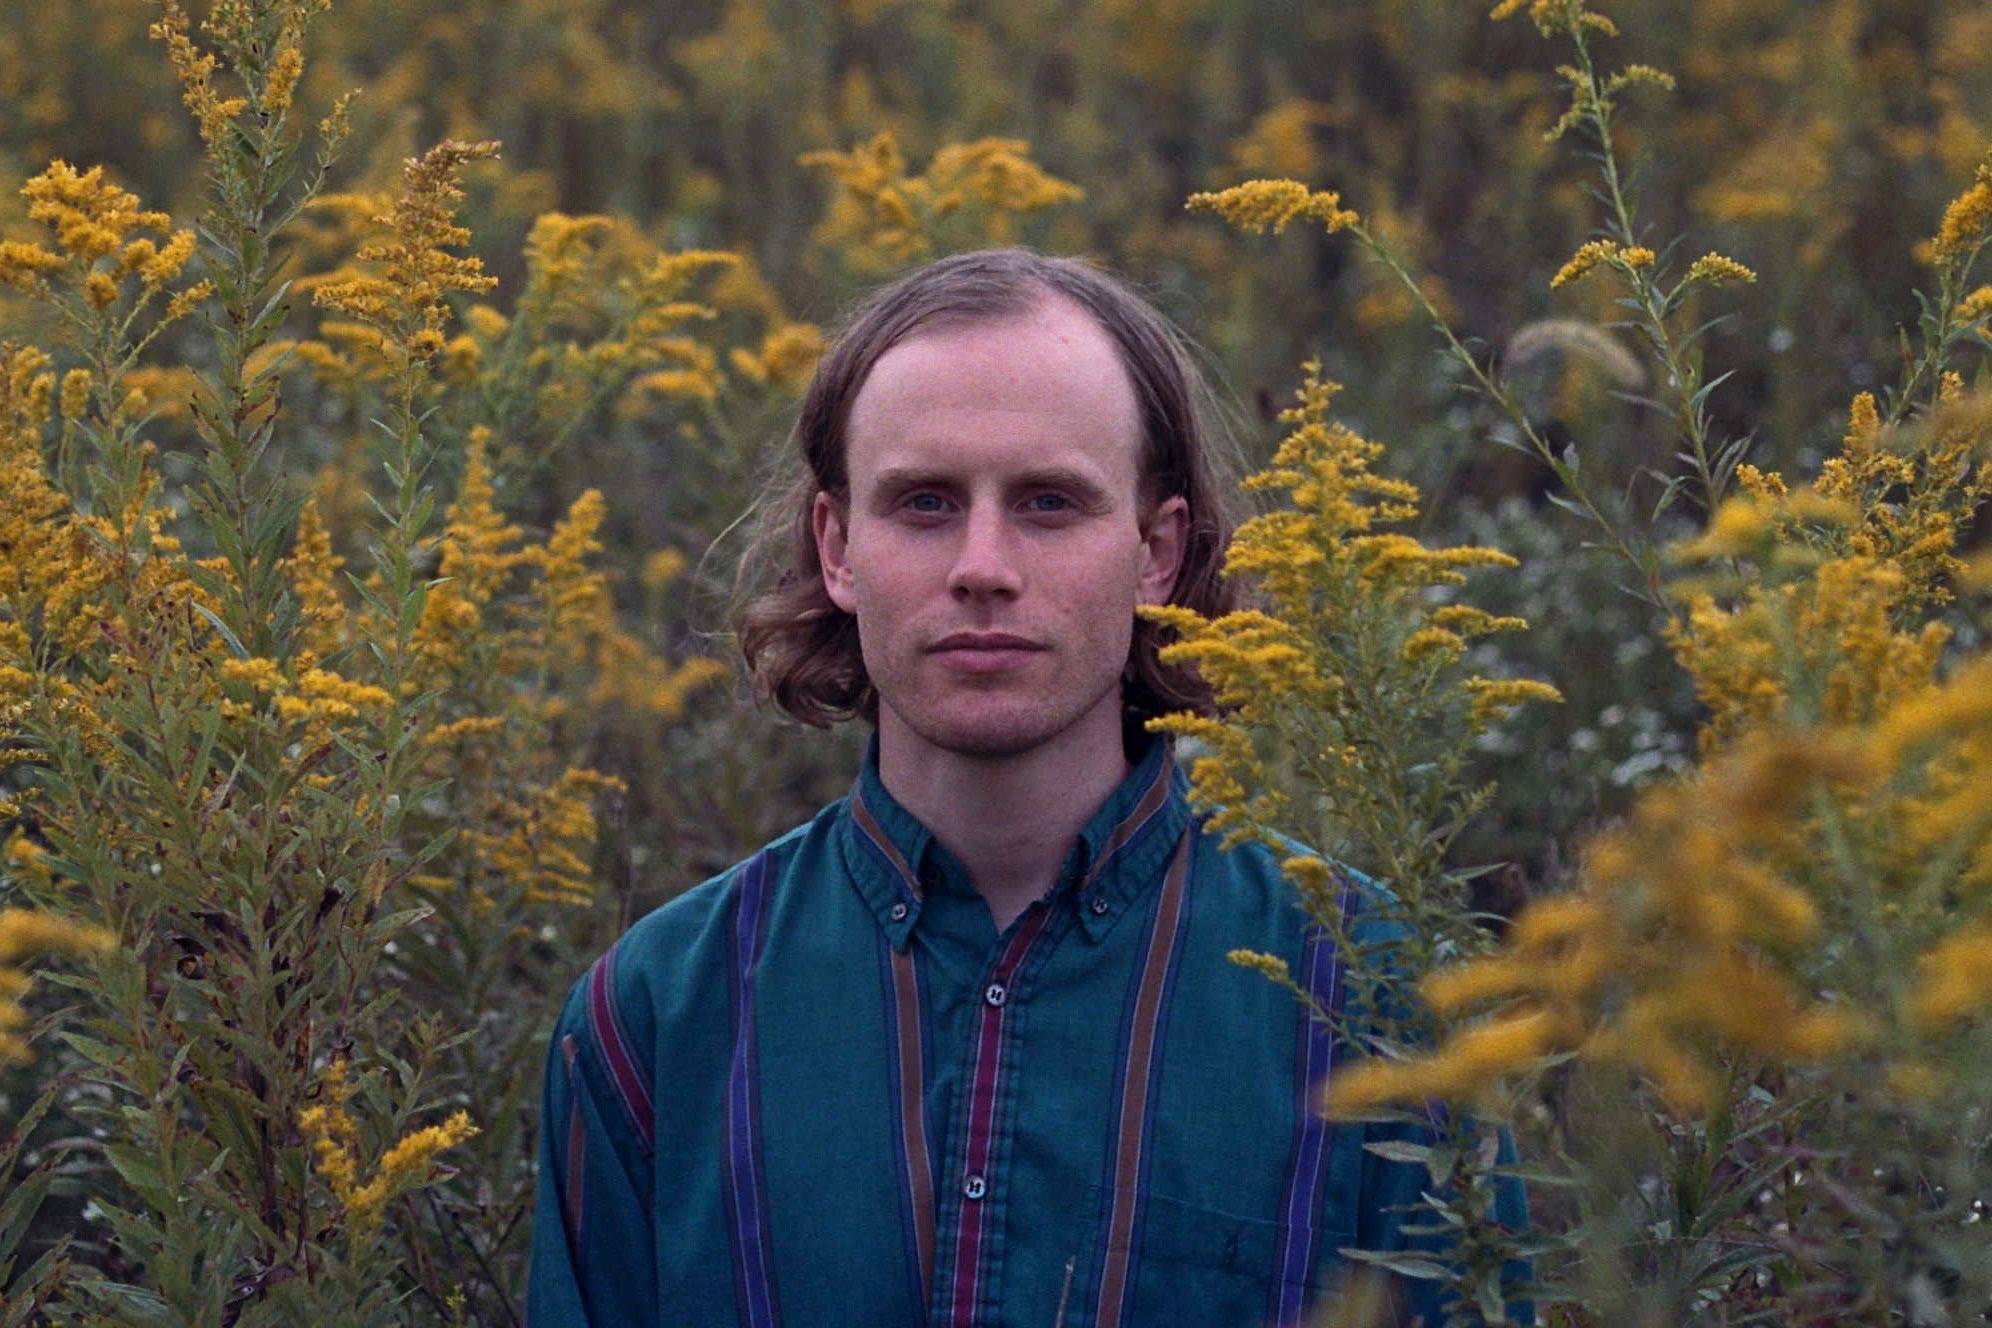 Superviolet's Steve Ciolek poses in a field of flora